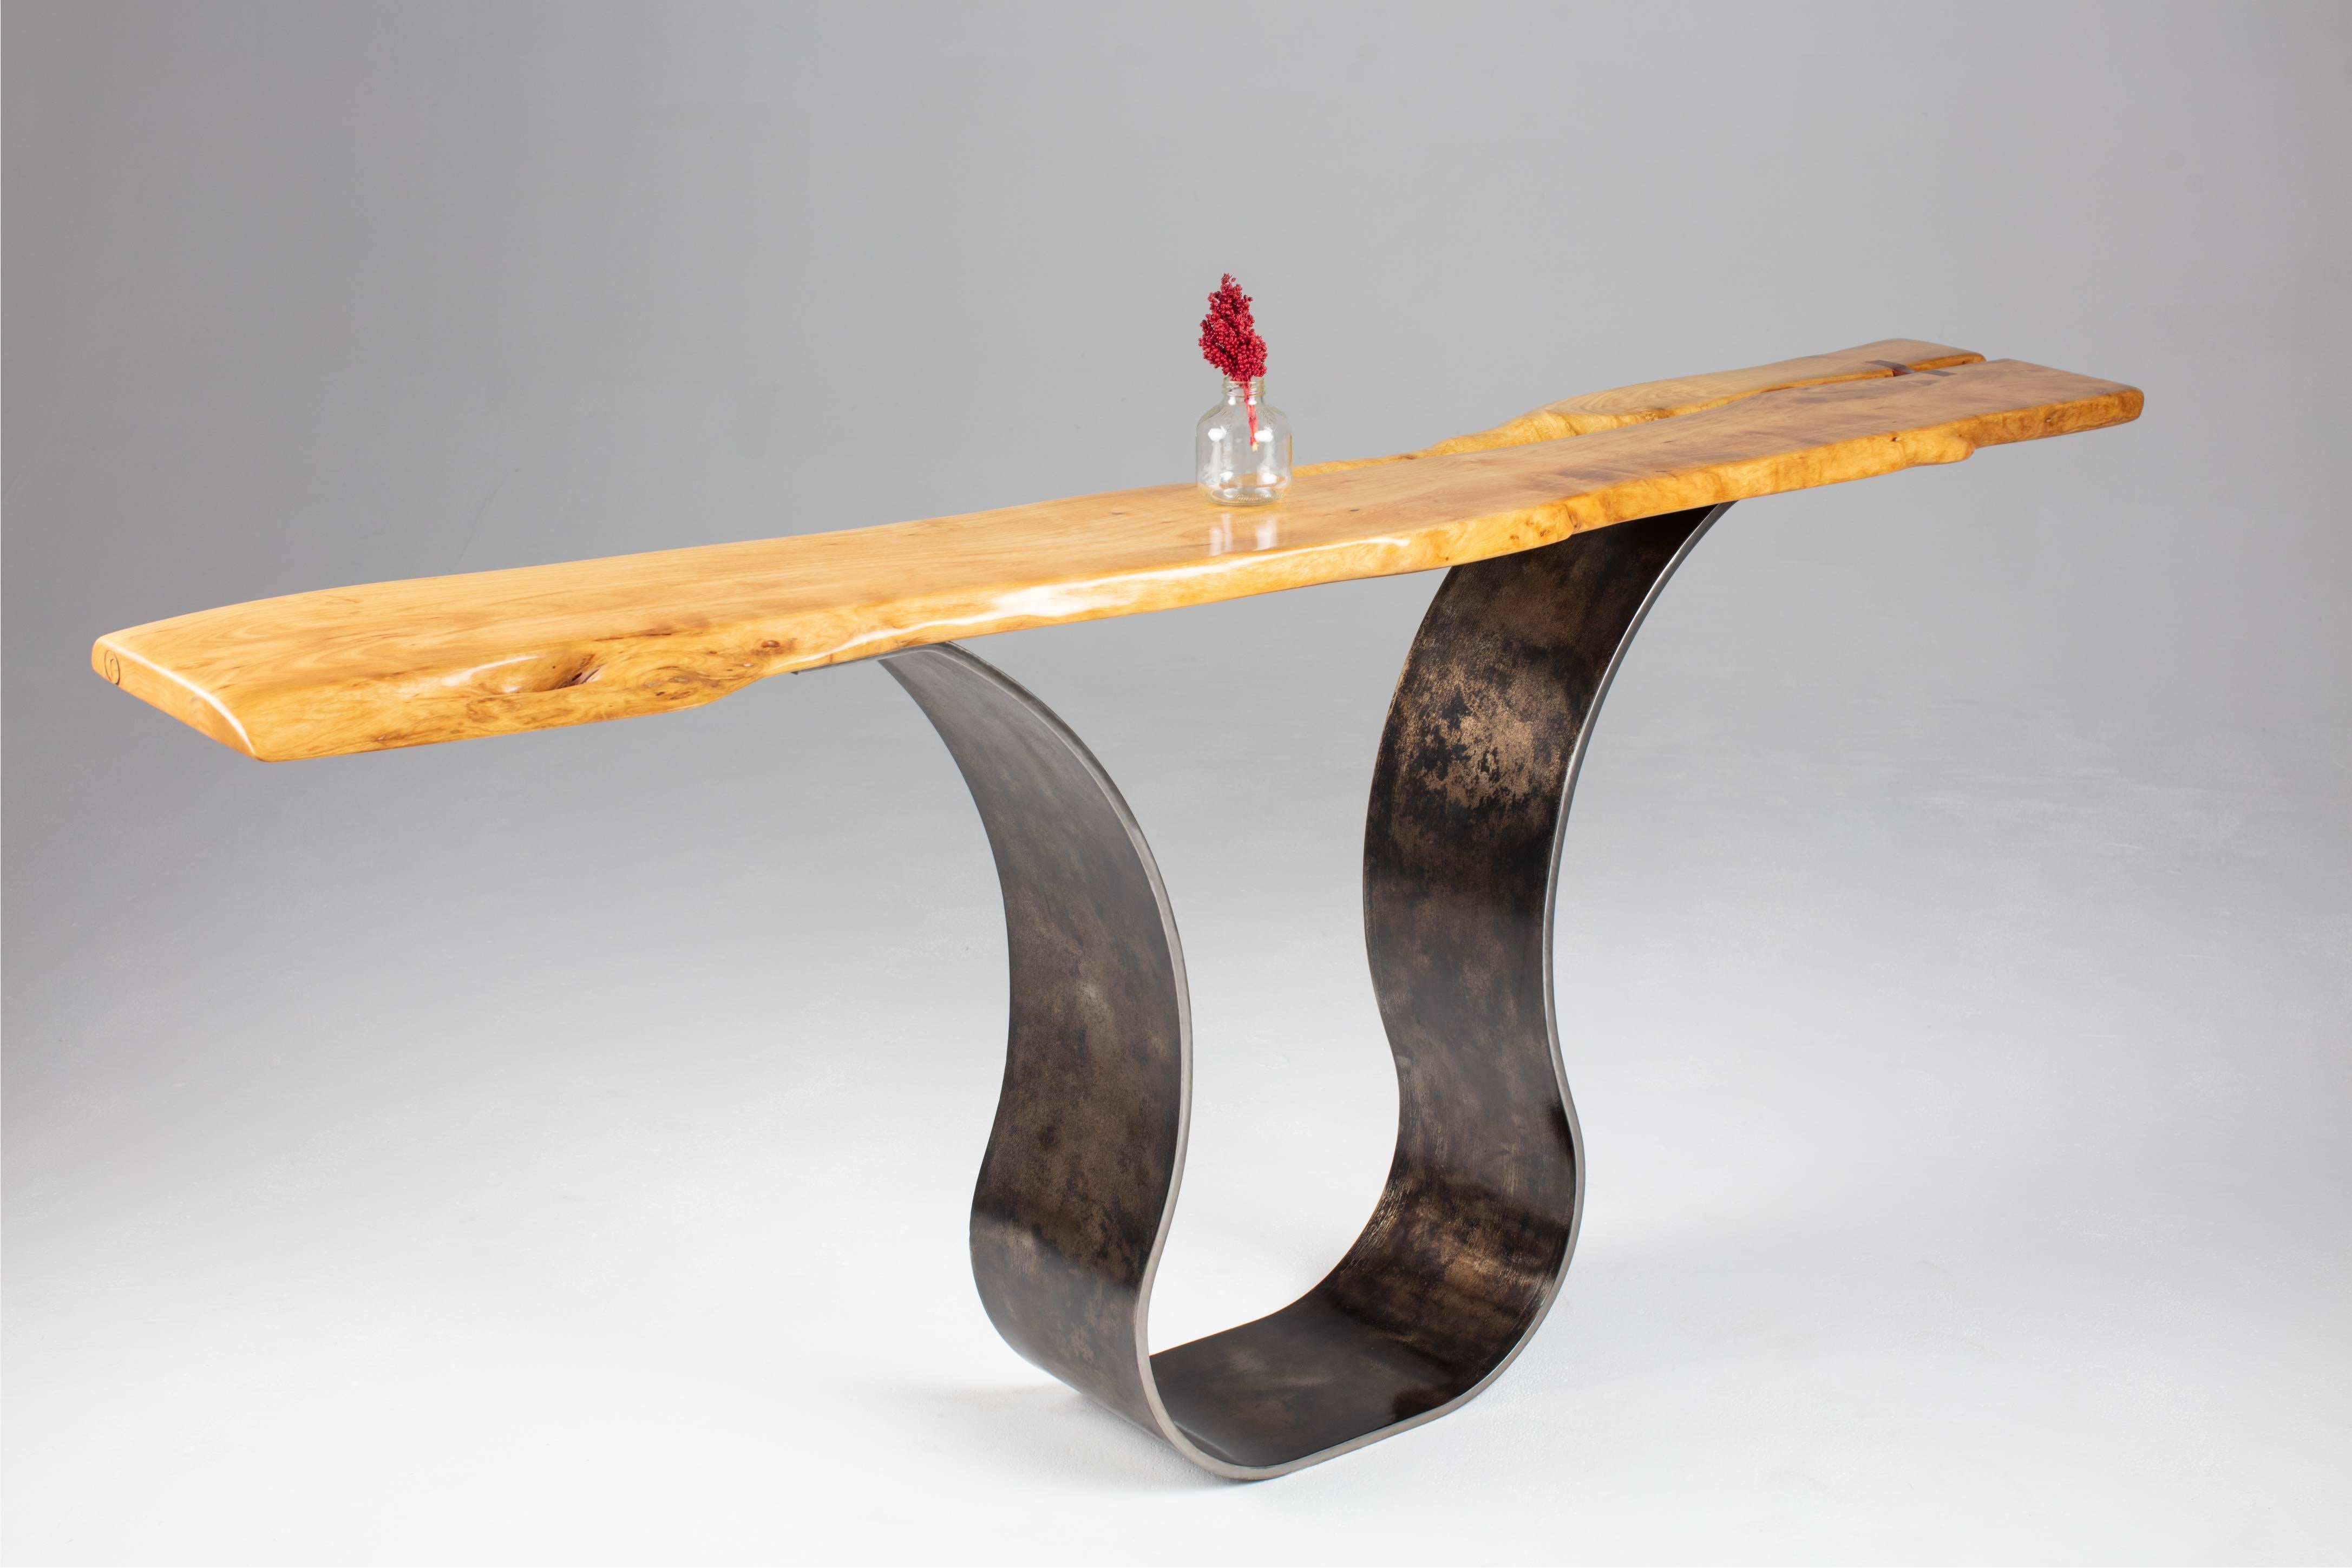 Der Konsolentisch Tina von Carlo aus antikisiertem Stahl ist ein skulpturaler Eingangstisch, der modern-industrielle mit organischen Elementen verbindet. Eine handverlesene Platte mit lebendiger Kante wird sorgfältig geschliffen, bevor sie mit einer